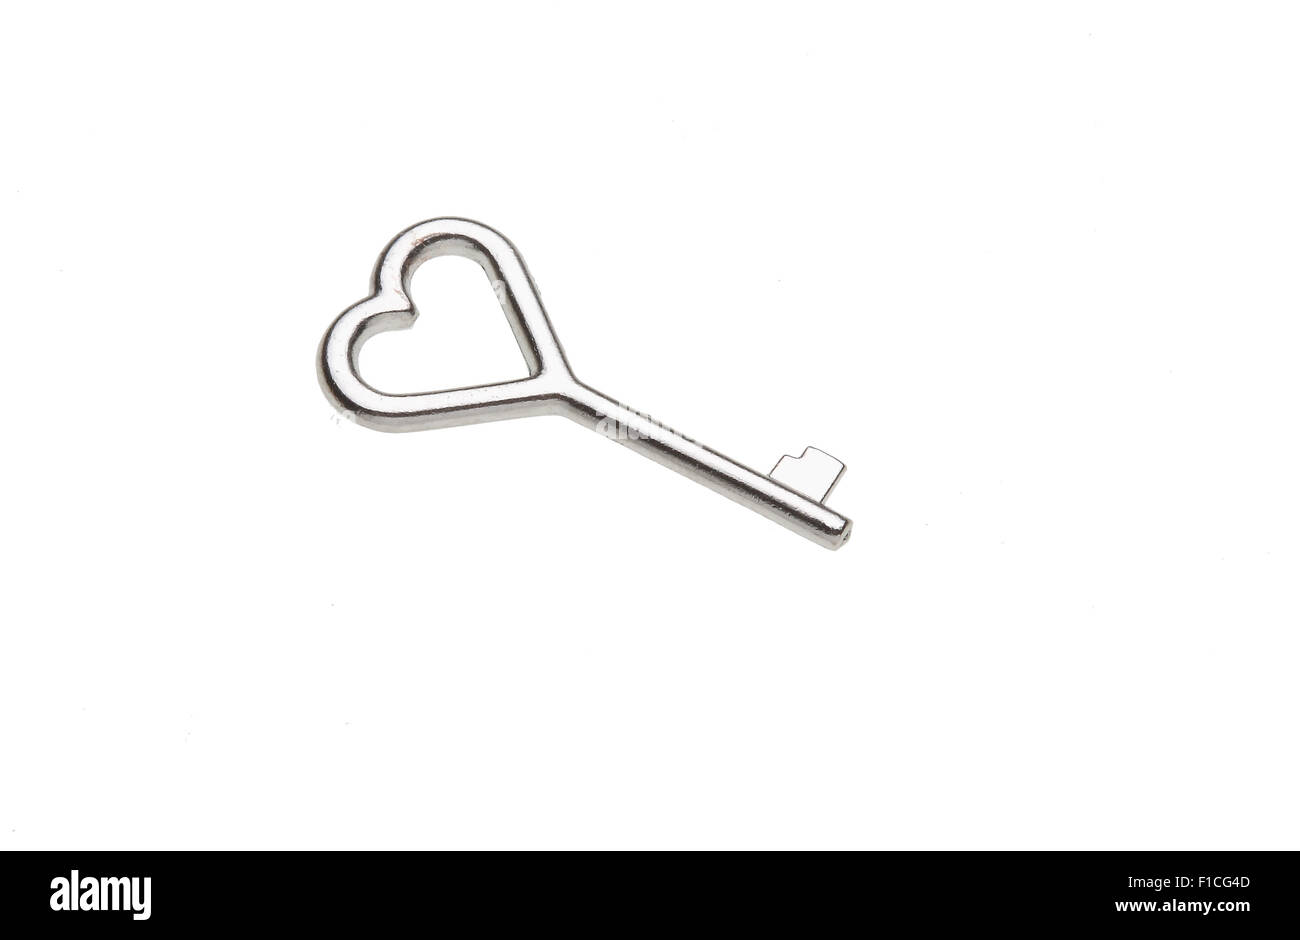 tiny key with a heart-shaped handle, Love lock Stock Photo